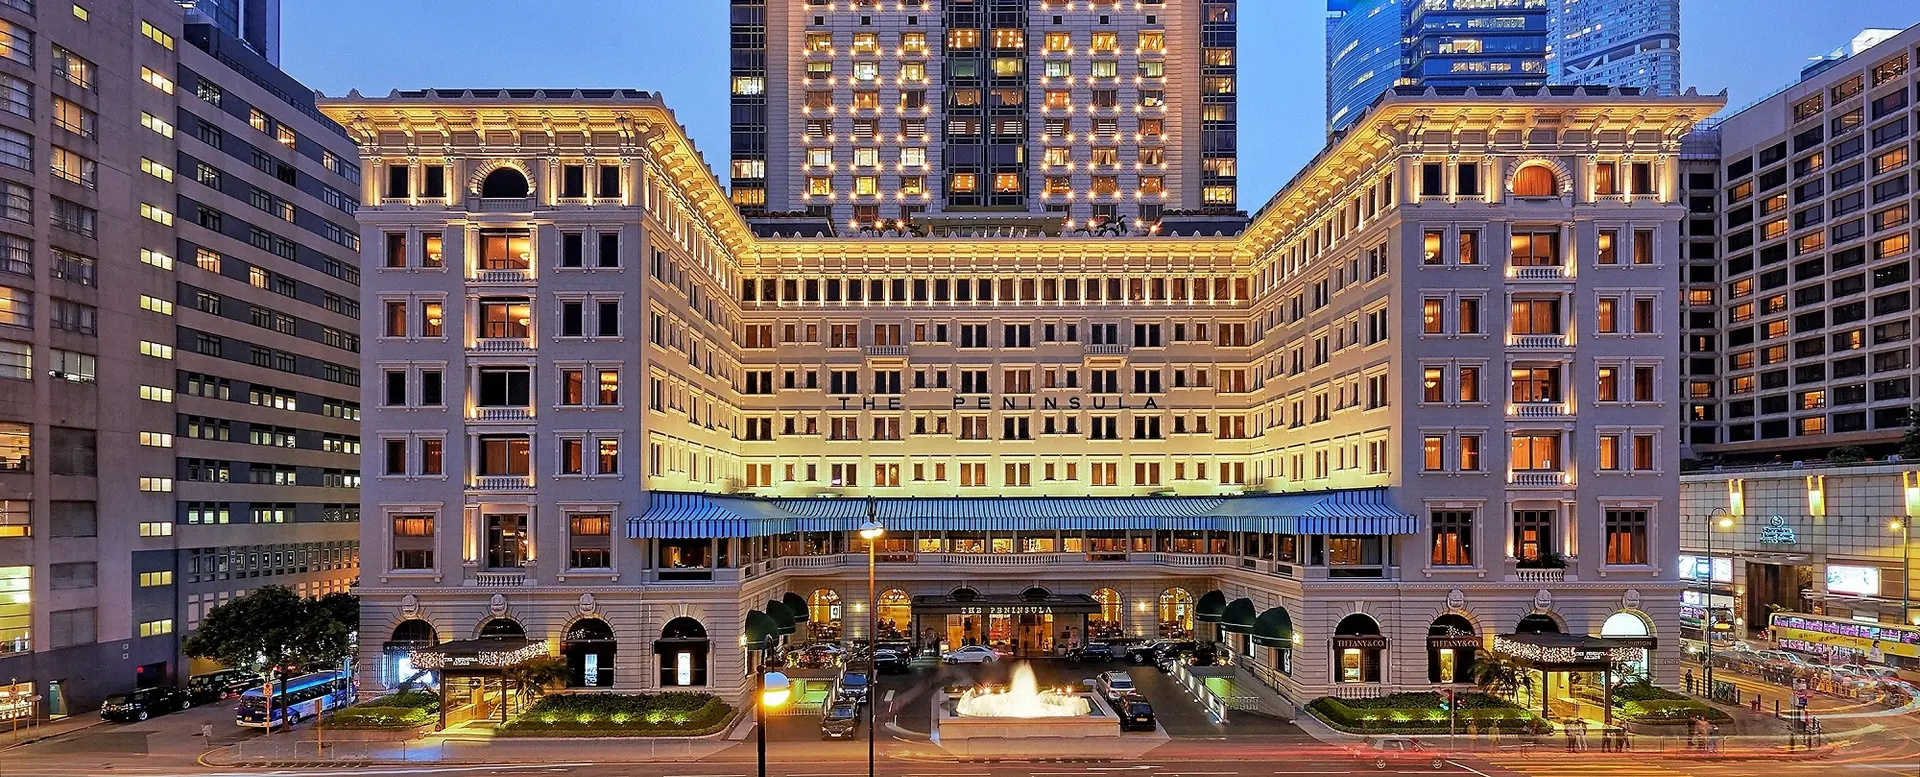 Hotel review Location' - The Peninsula Hong Kong - 0